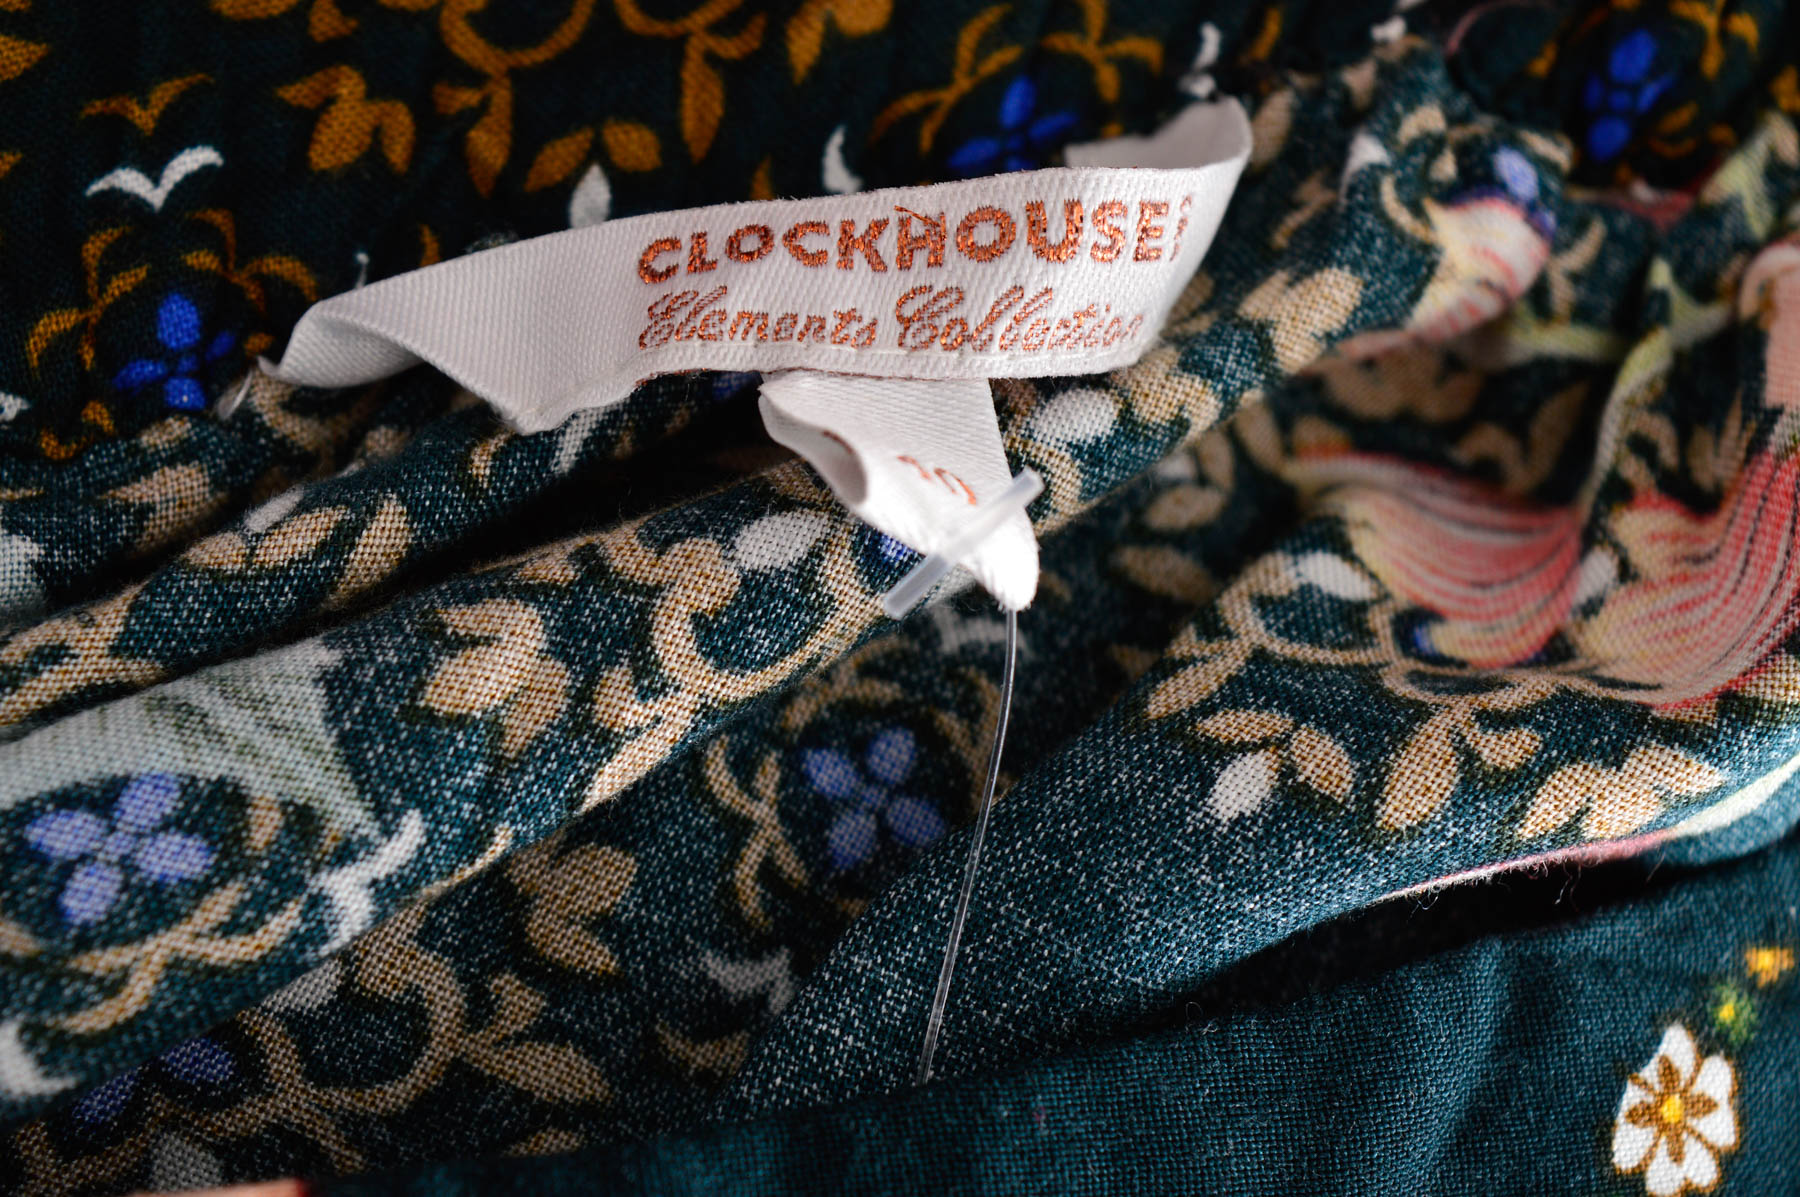 Skirt - Clockhouse - 2